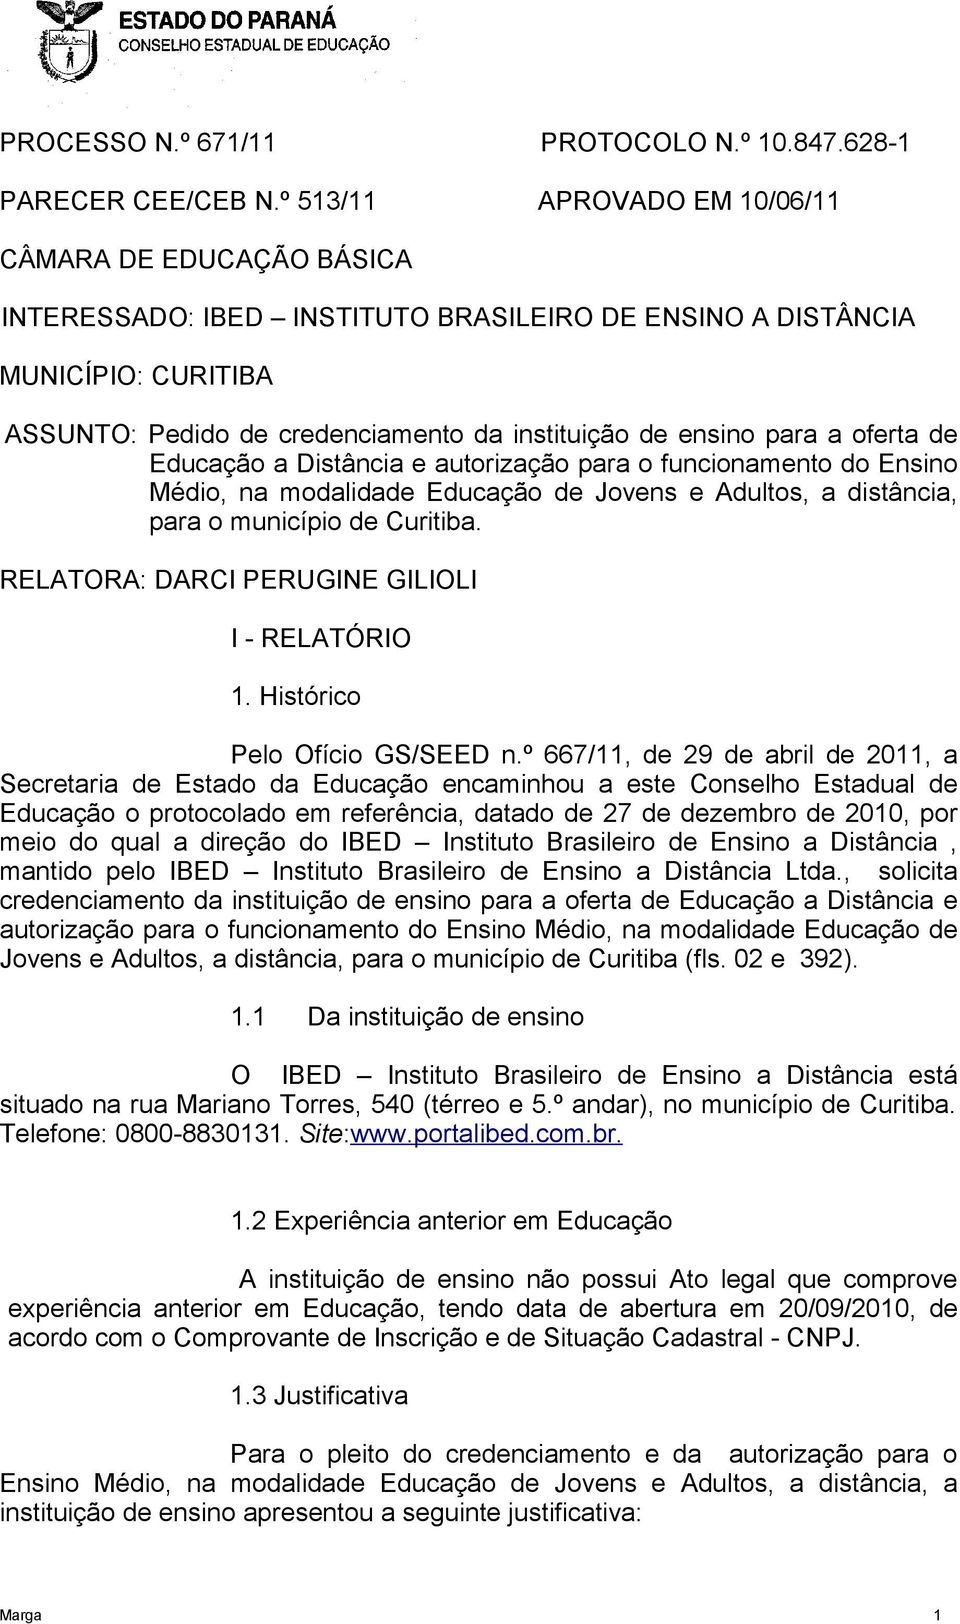 para a oferta de Educação a Distância e autorização para o funcionamento do Ensino Médio, na modalidade Educação de Jovens e Adultos, a distância, para o município de Curitiba.